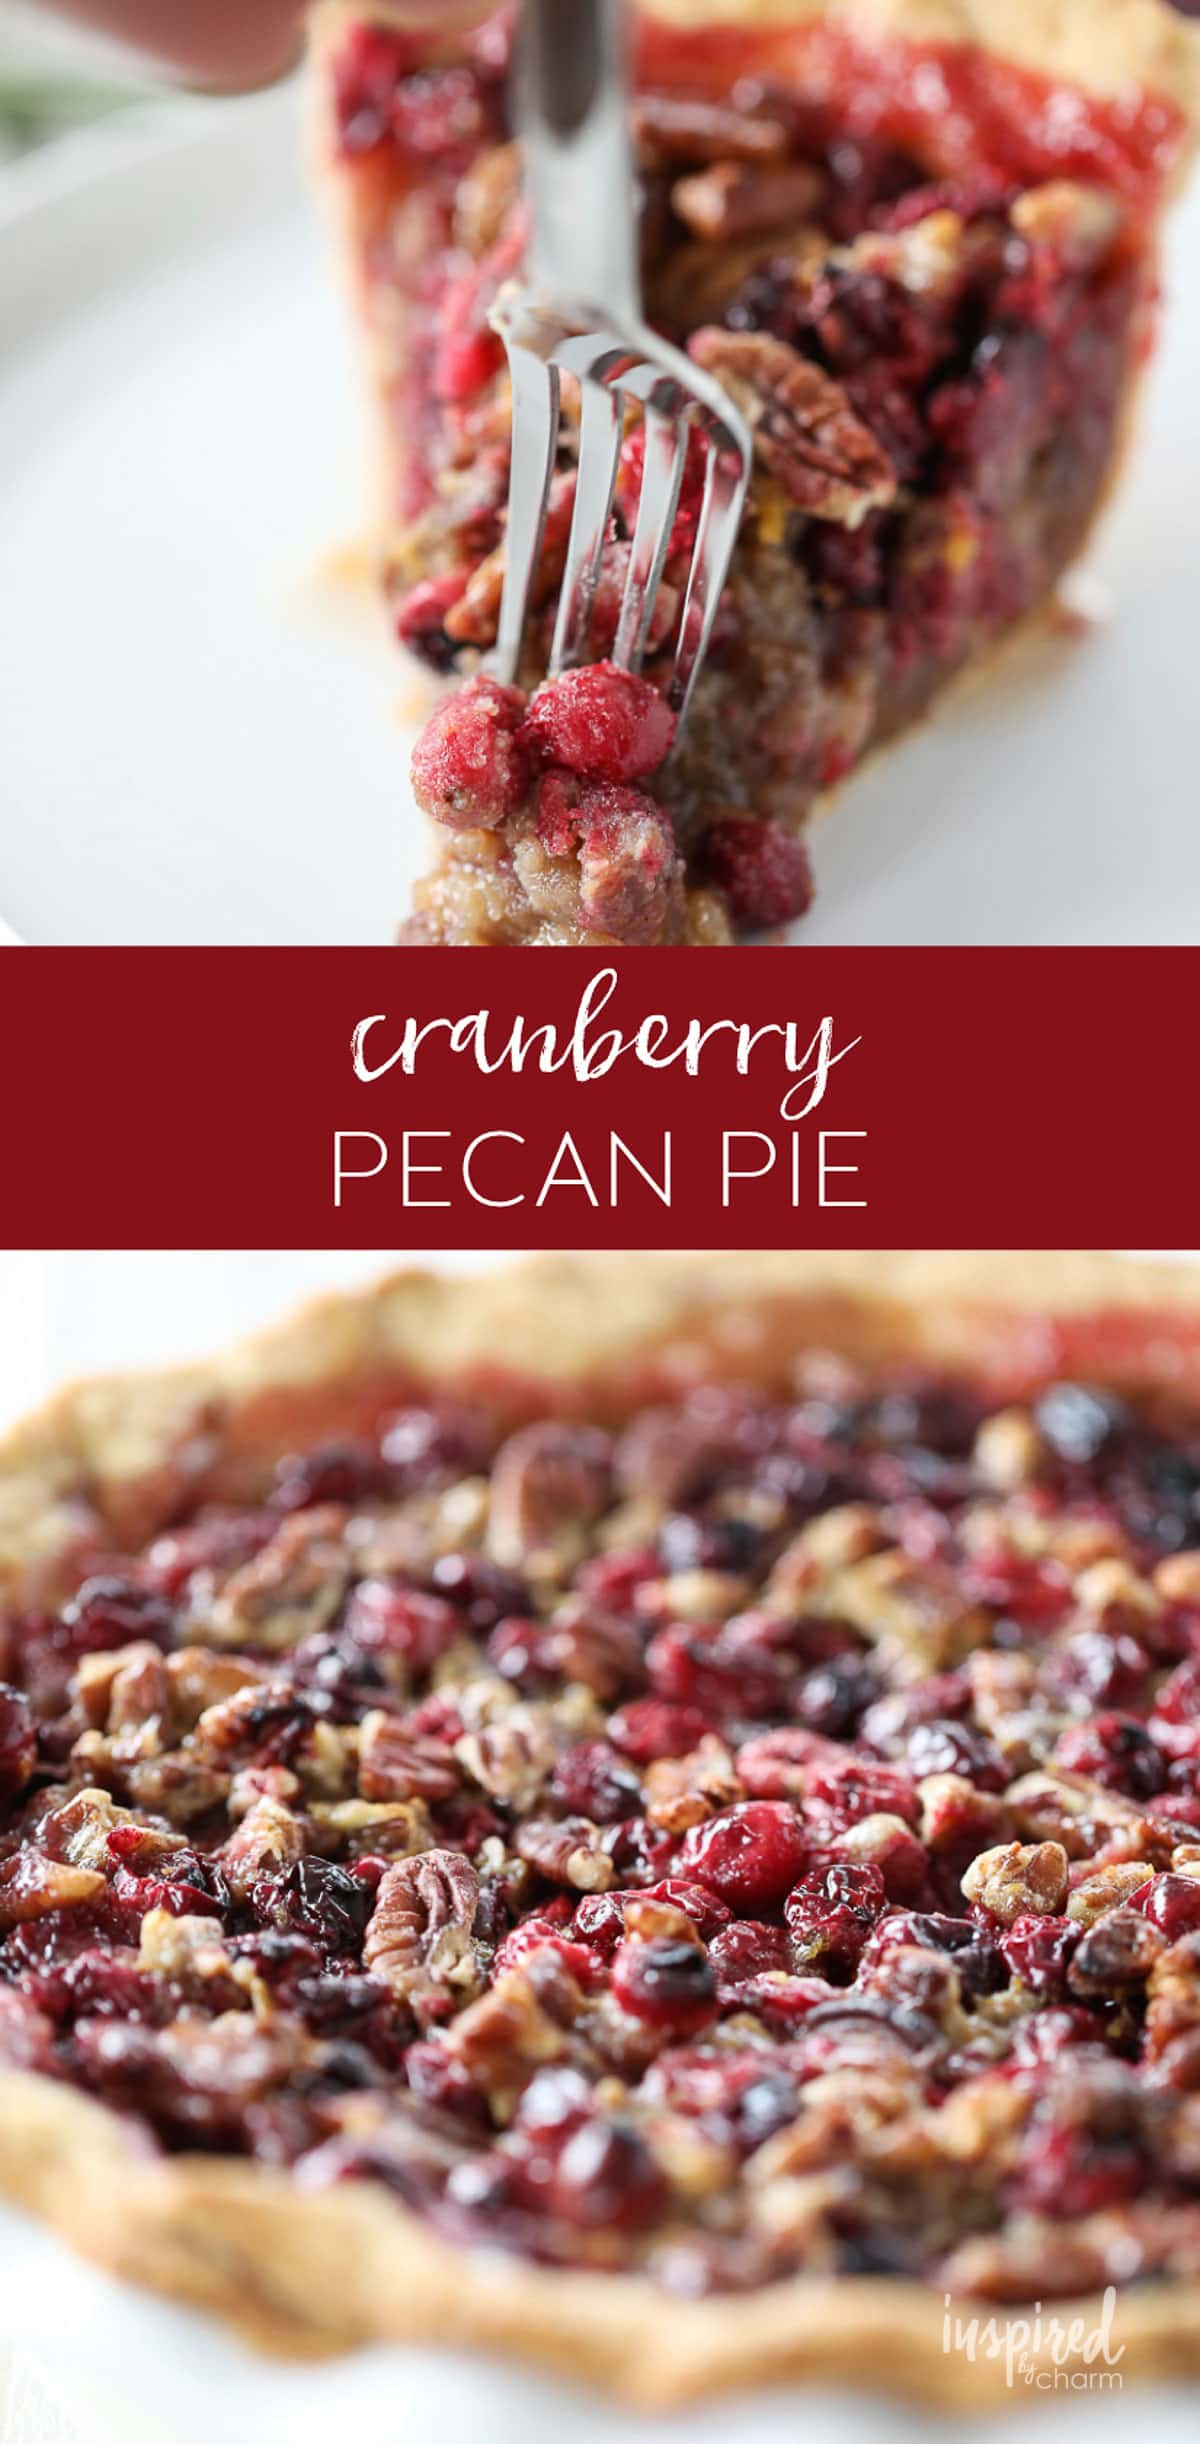 How to a Make Cranberry Pecan Pie for the Holidays #christmas #dessert #recipe #cranberry #pecan #pie